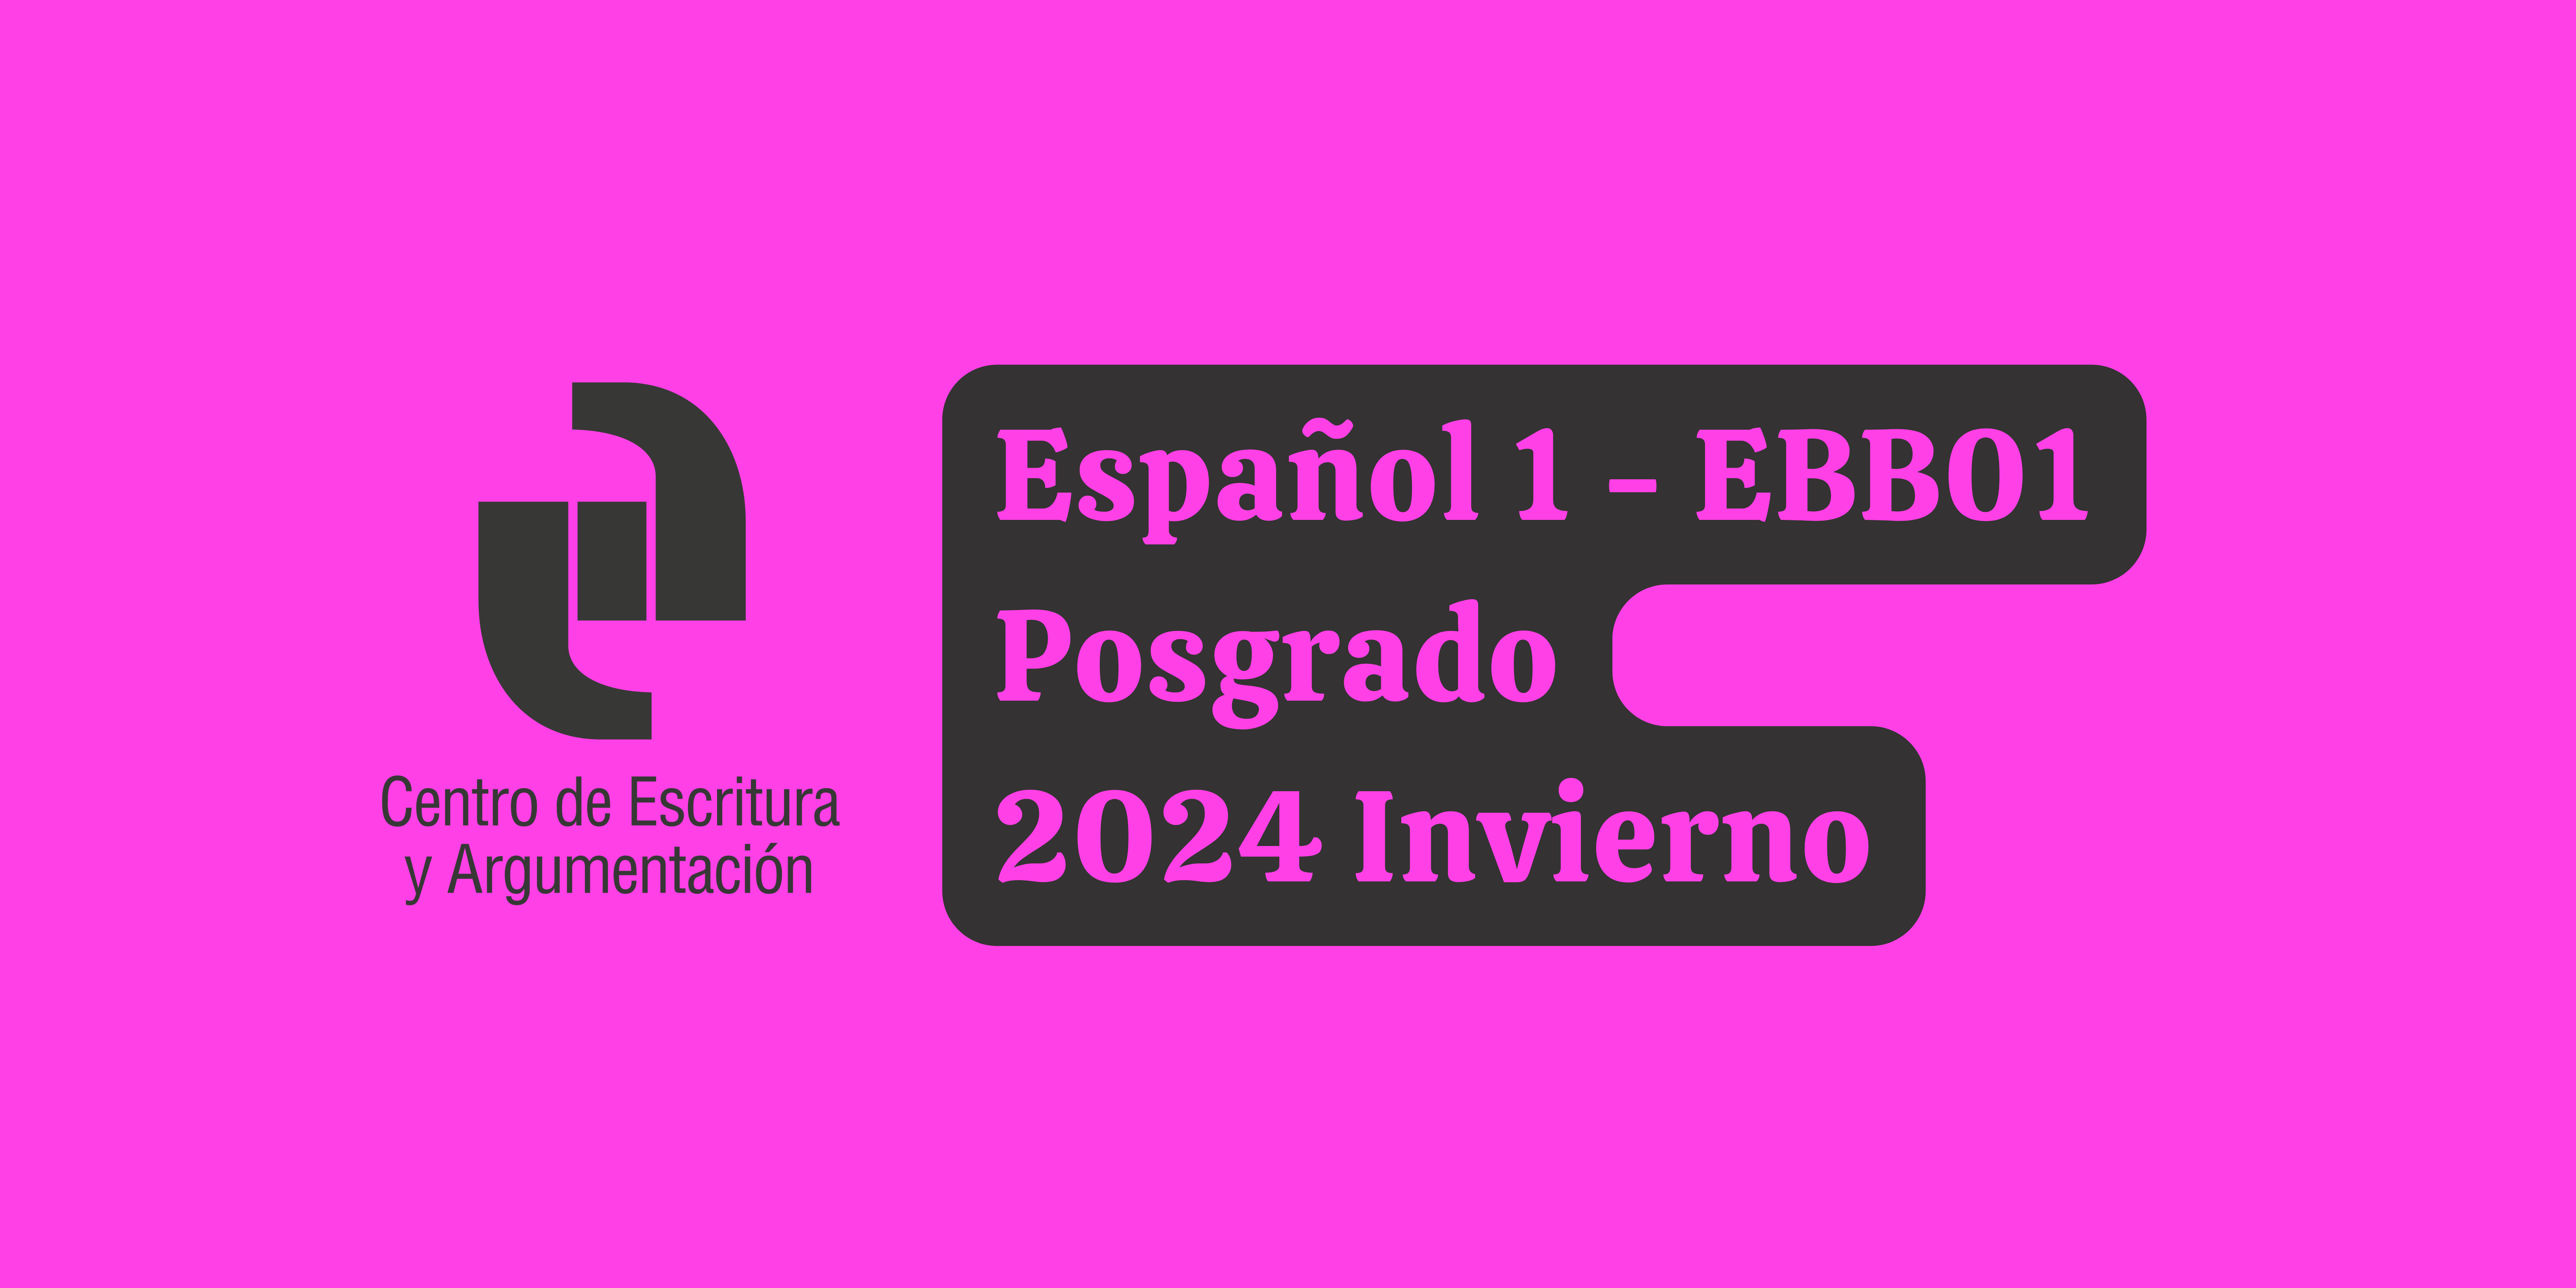 T24I- Español 2 (EBB01-Posgrado)